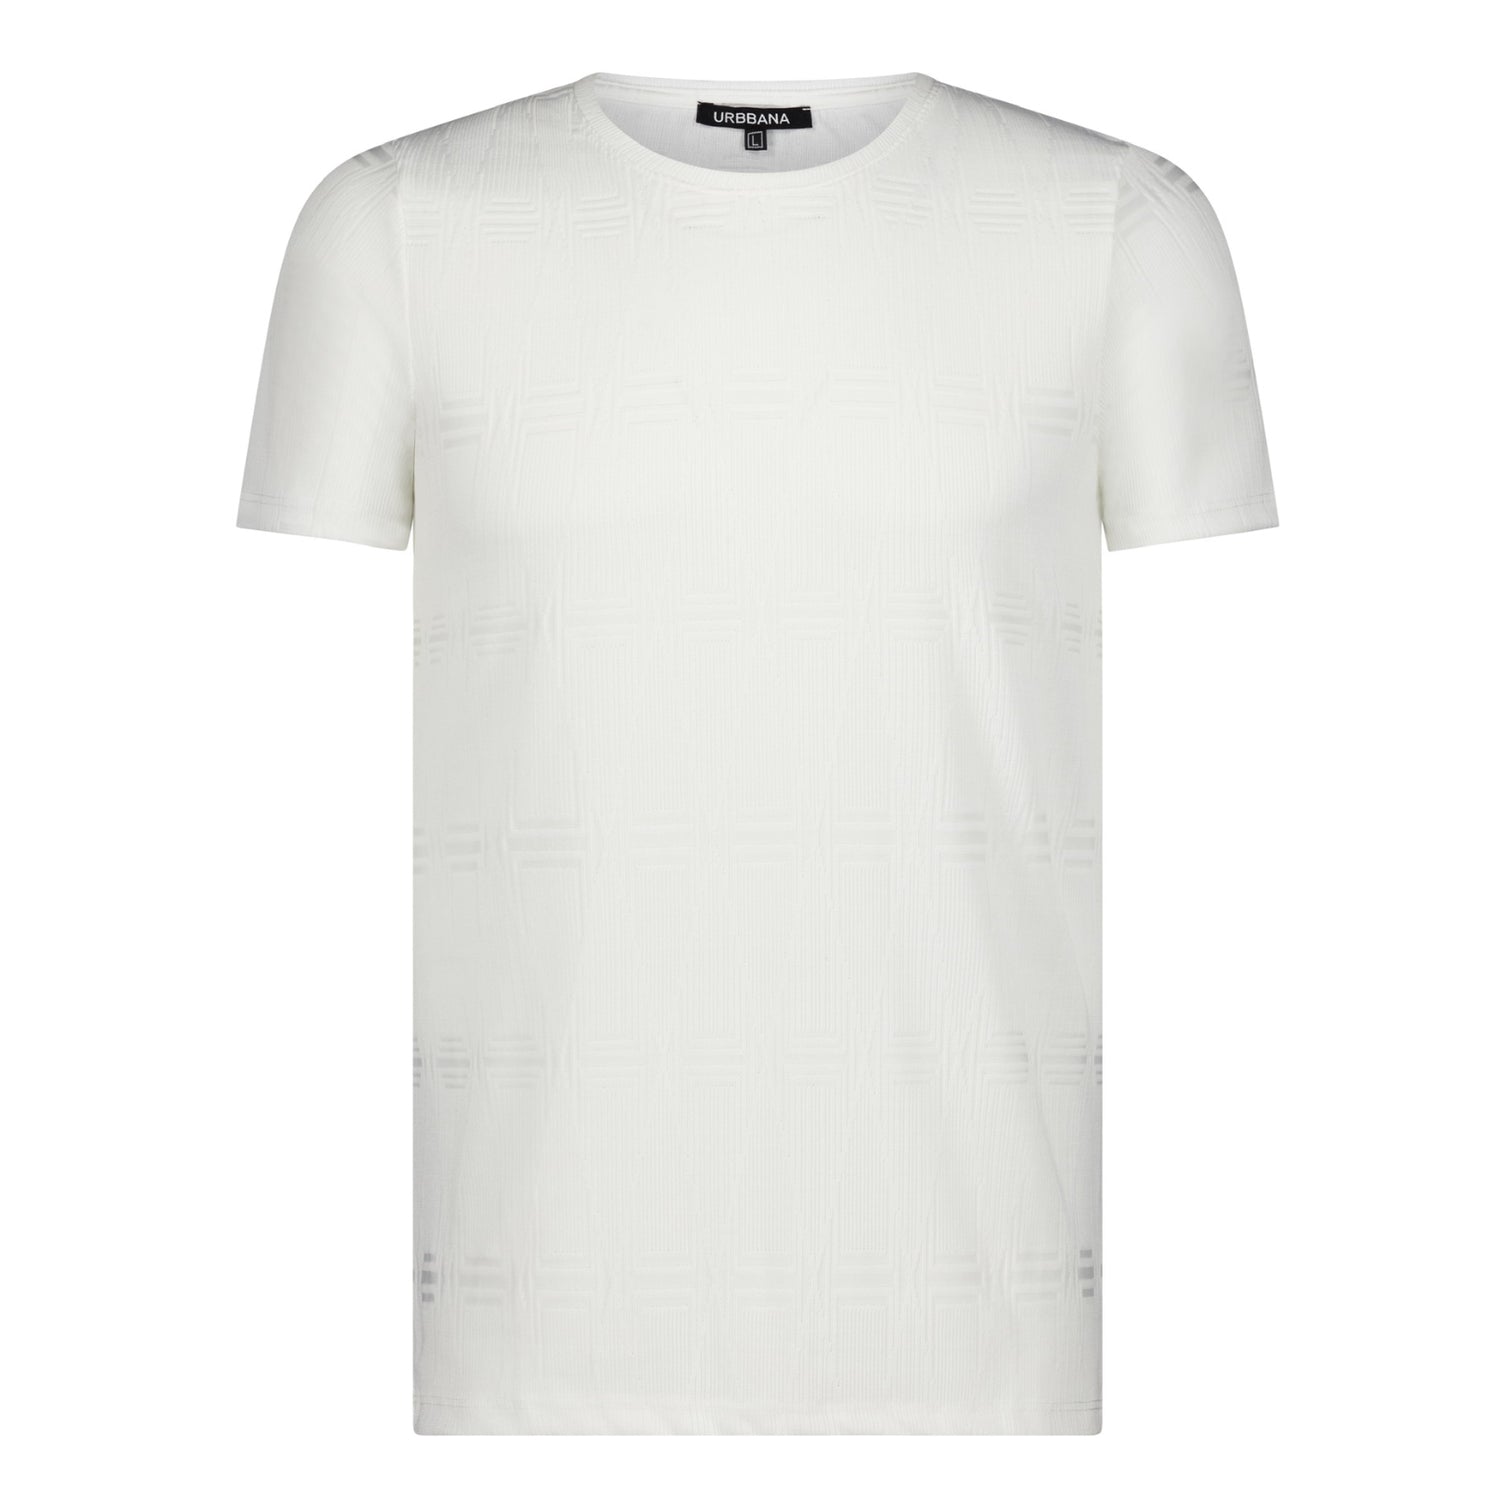 The Zanetti T-Shirt - White